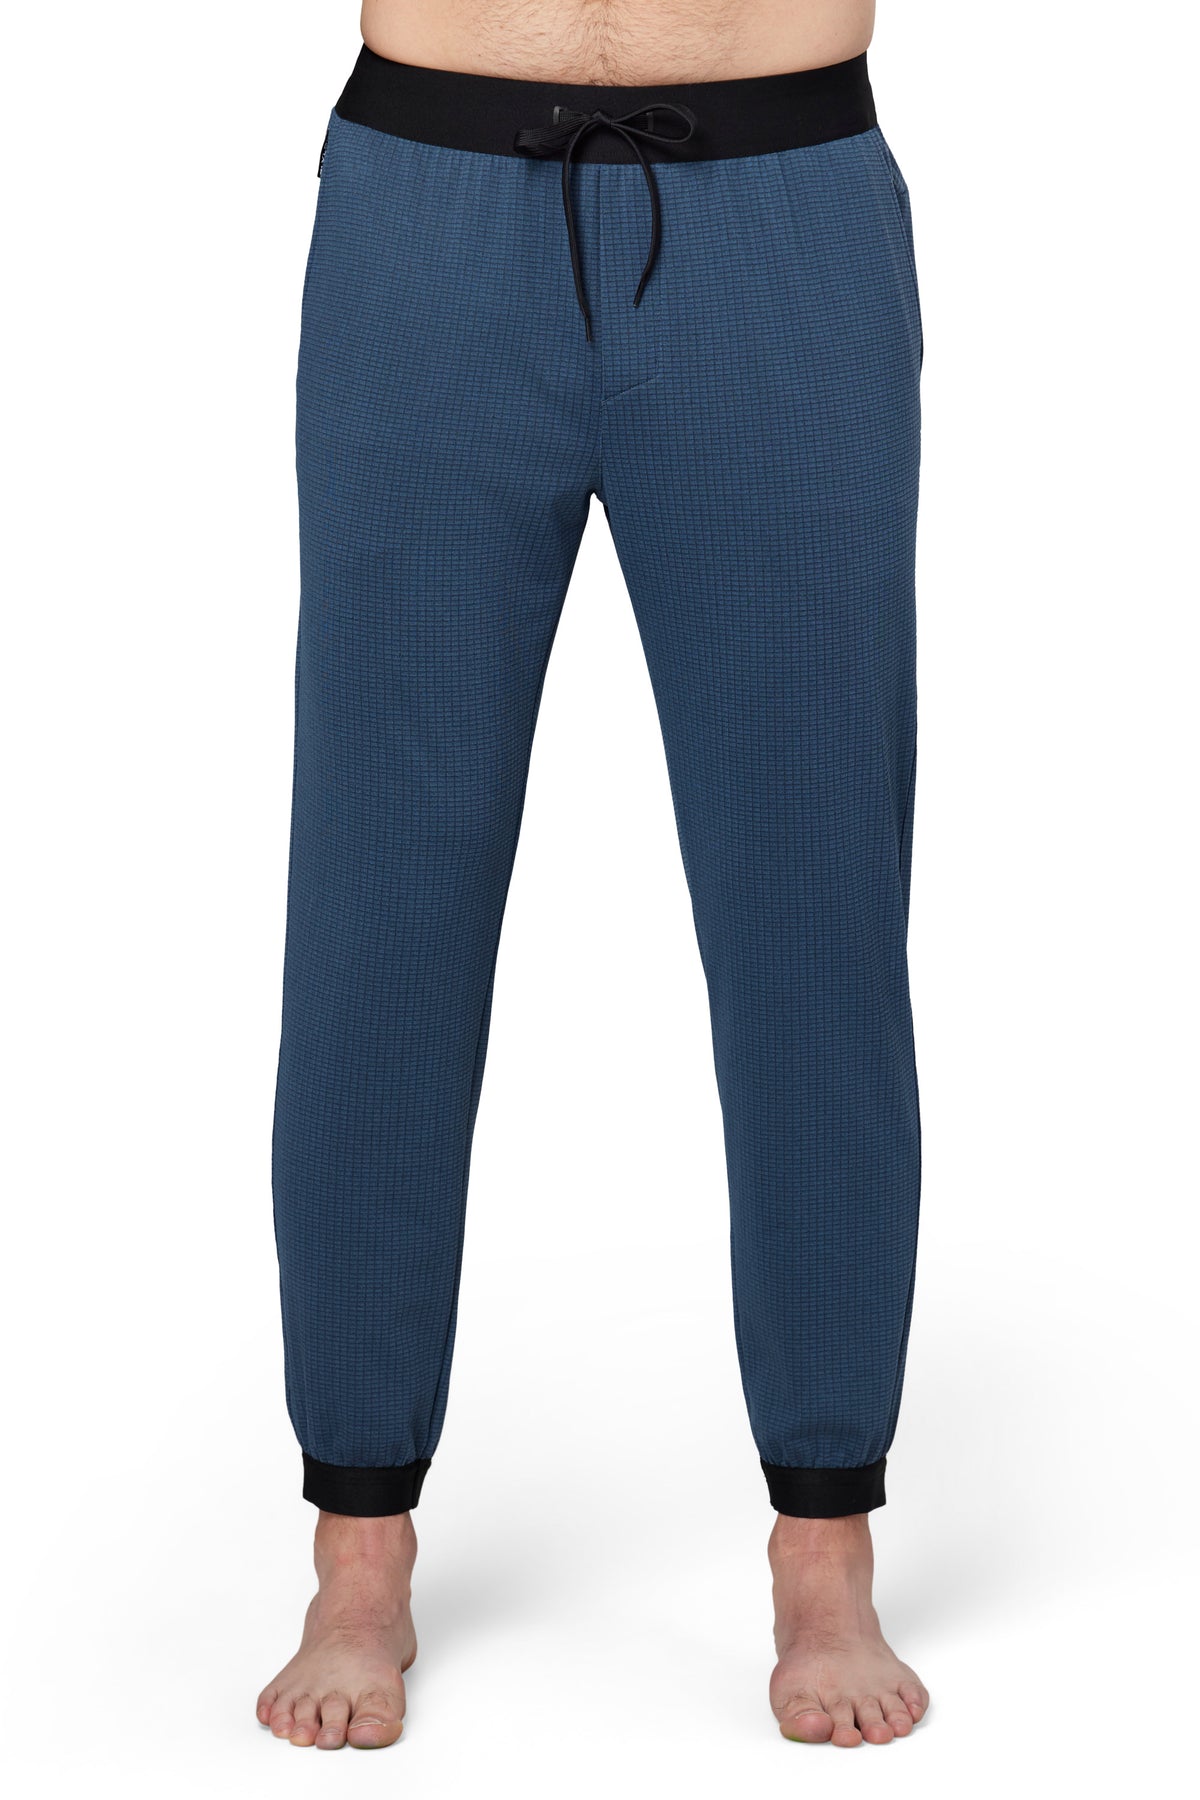 Tek Gear Mens Dark Blue Ultra Soft Fleece Pullover Hoodie Size XL